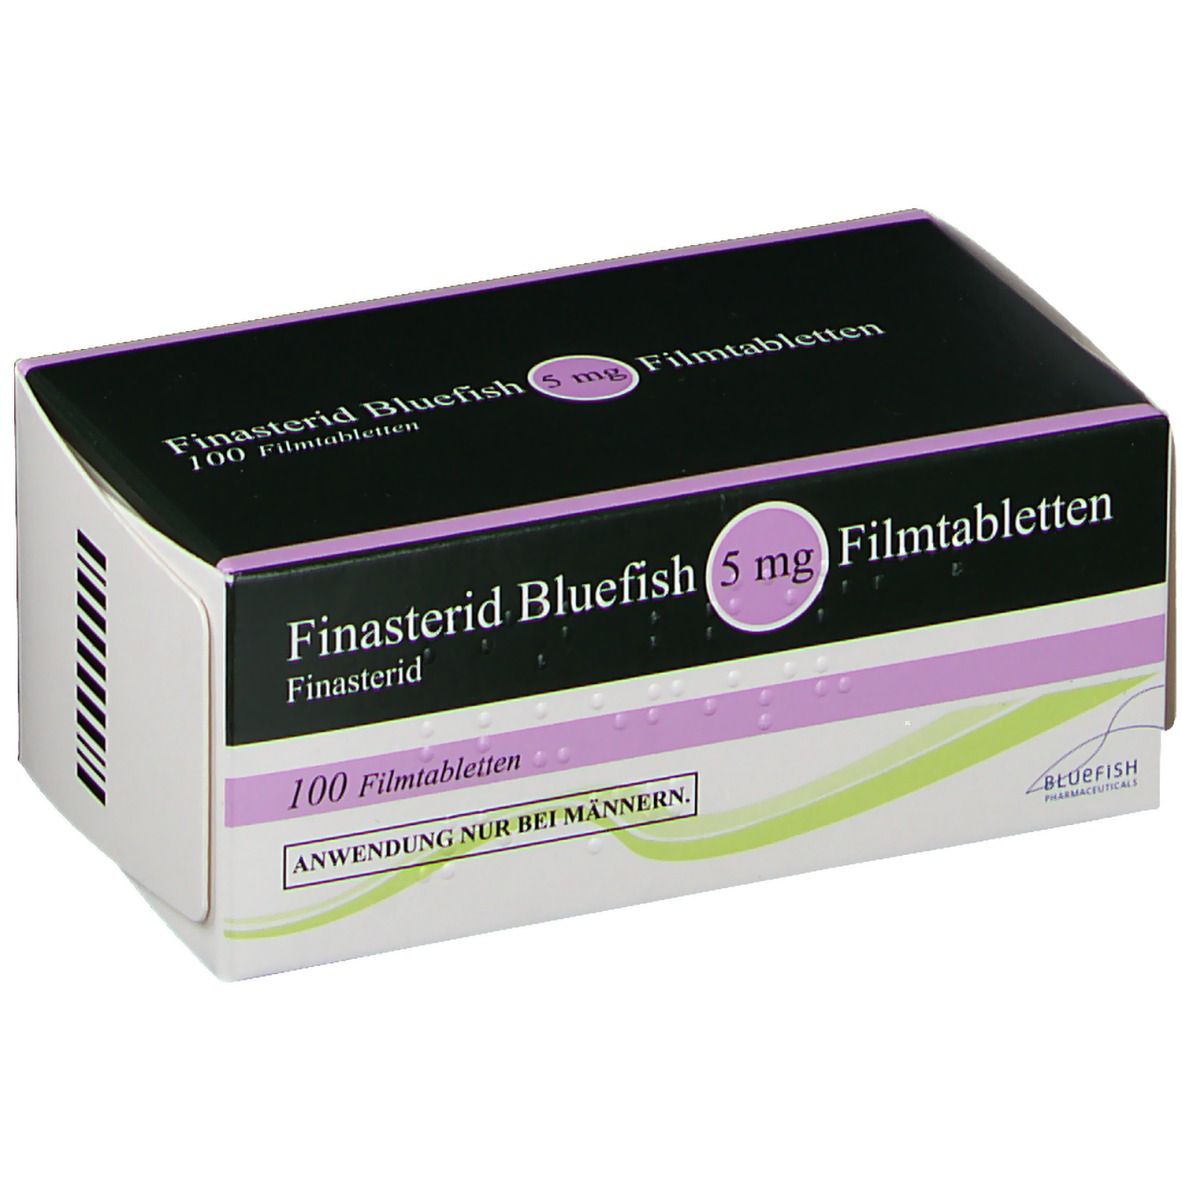 Finasterid Bluefish 5 mg